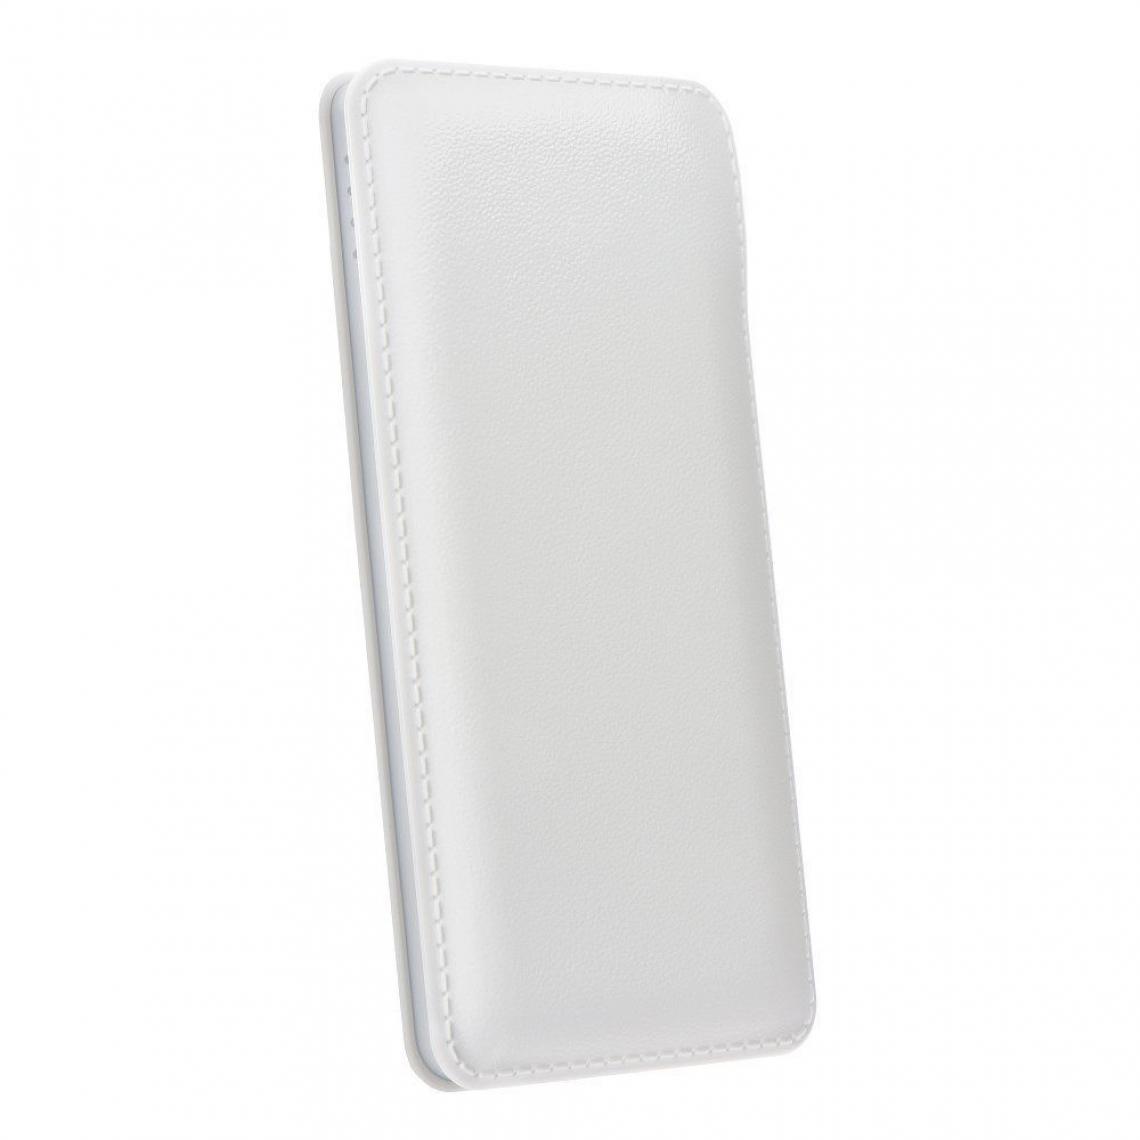 Ozzzo - Chargeur batterie externe 20000 mAh powerbank ozzzo blanc pour Realme 1 - Autres accessoires smartphone